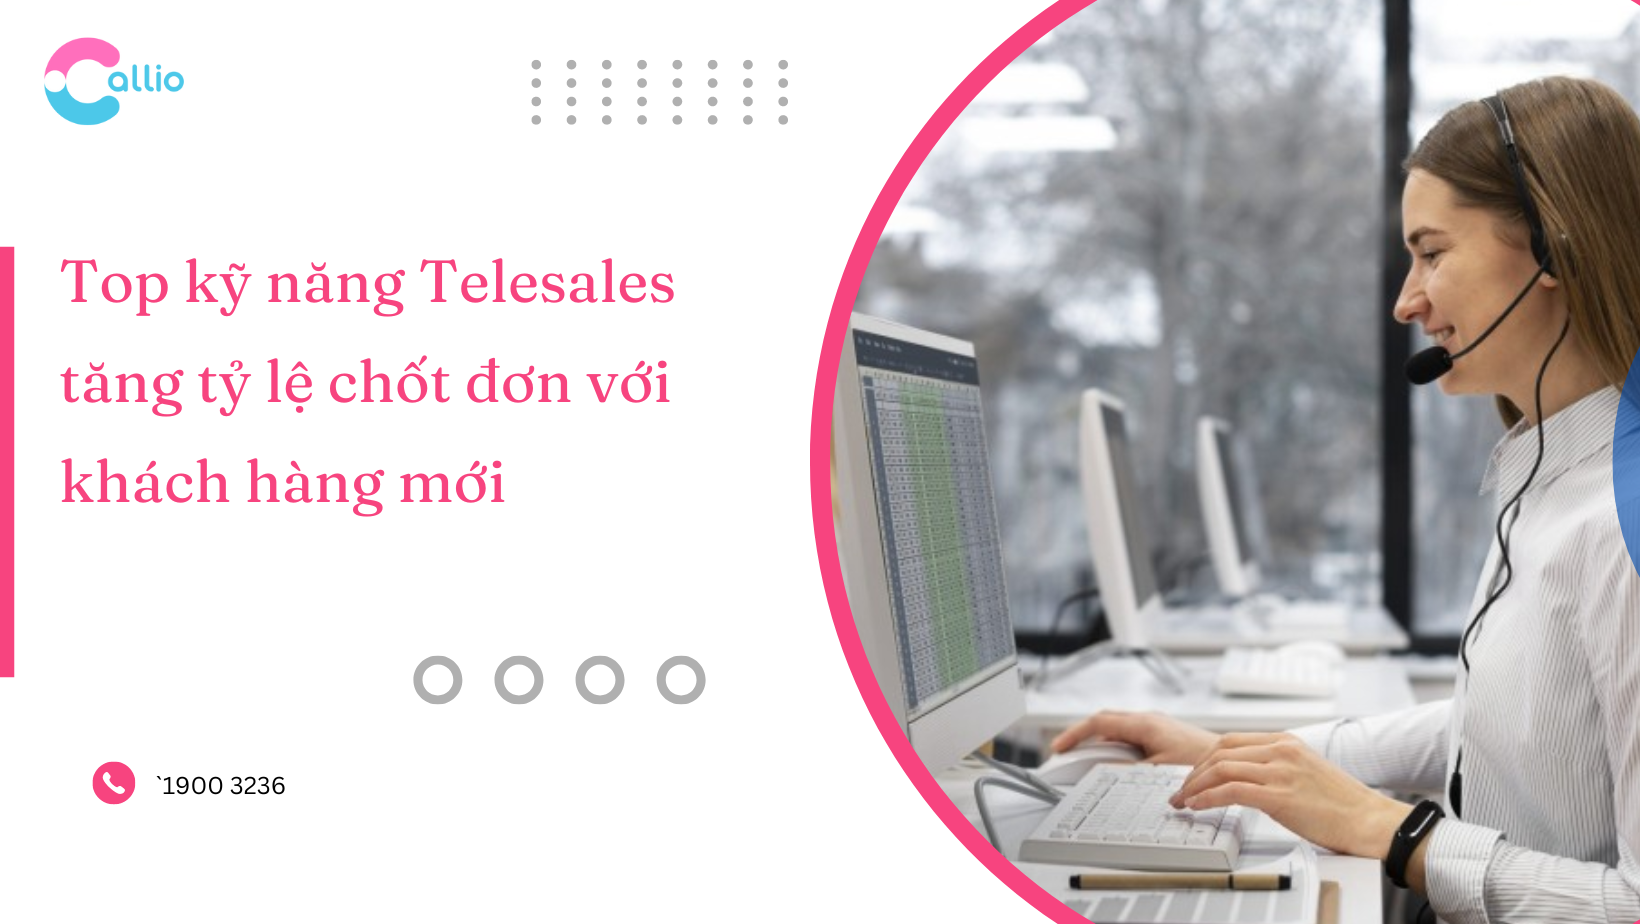 Top kỹ năng Telesales tăng tỷ lệ chốt đơn với khách hàng mới